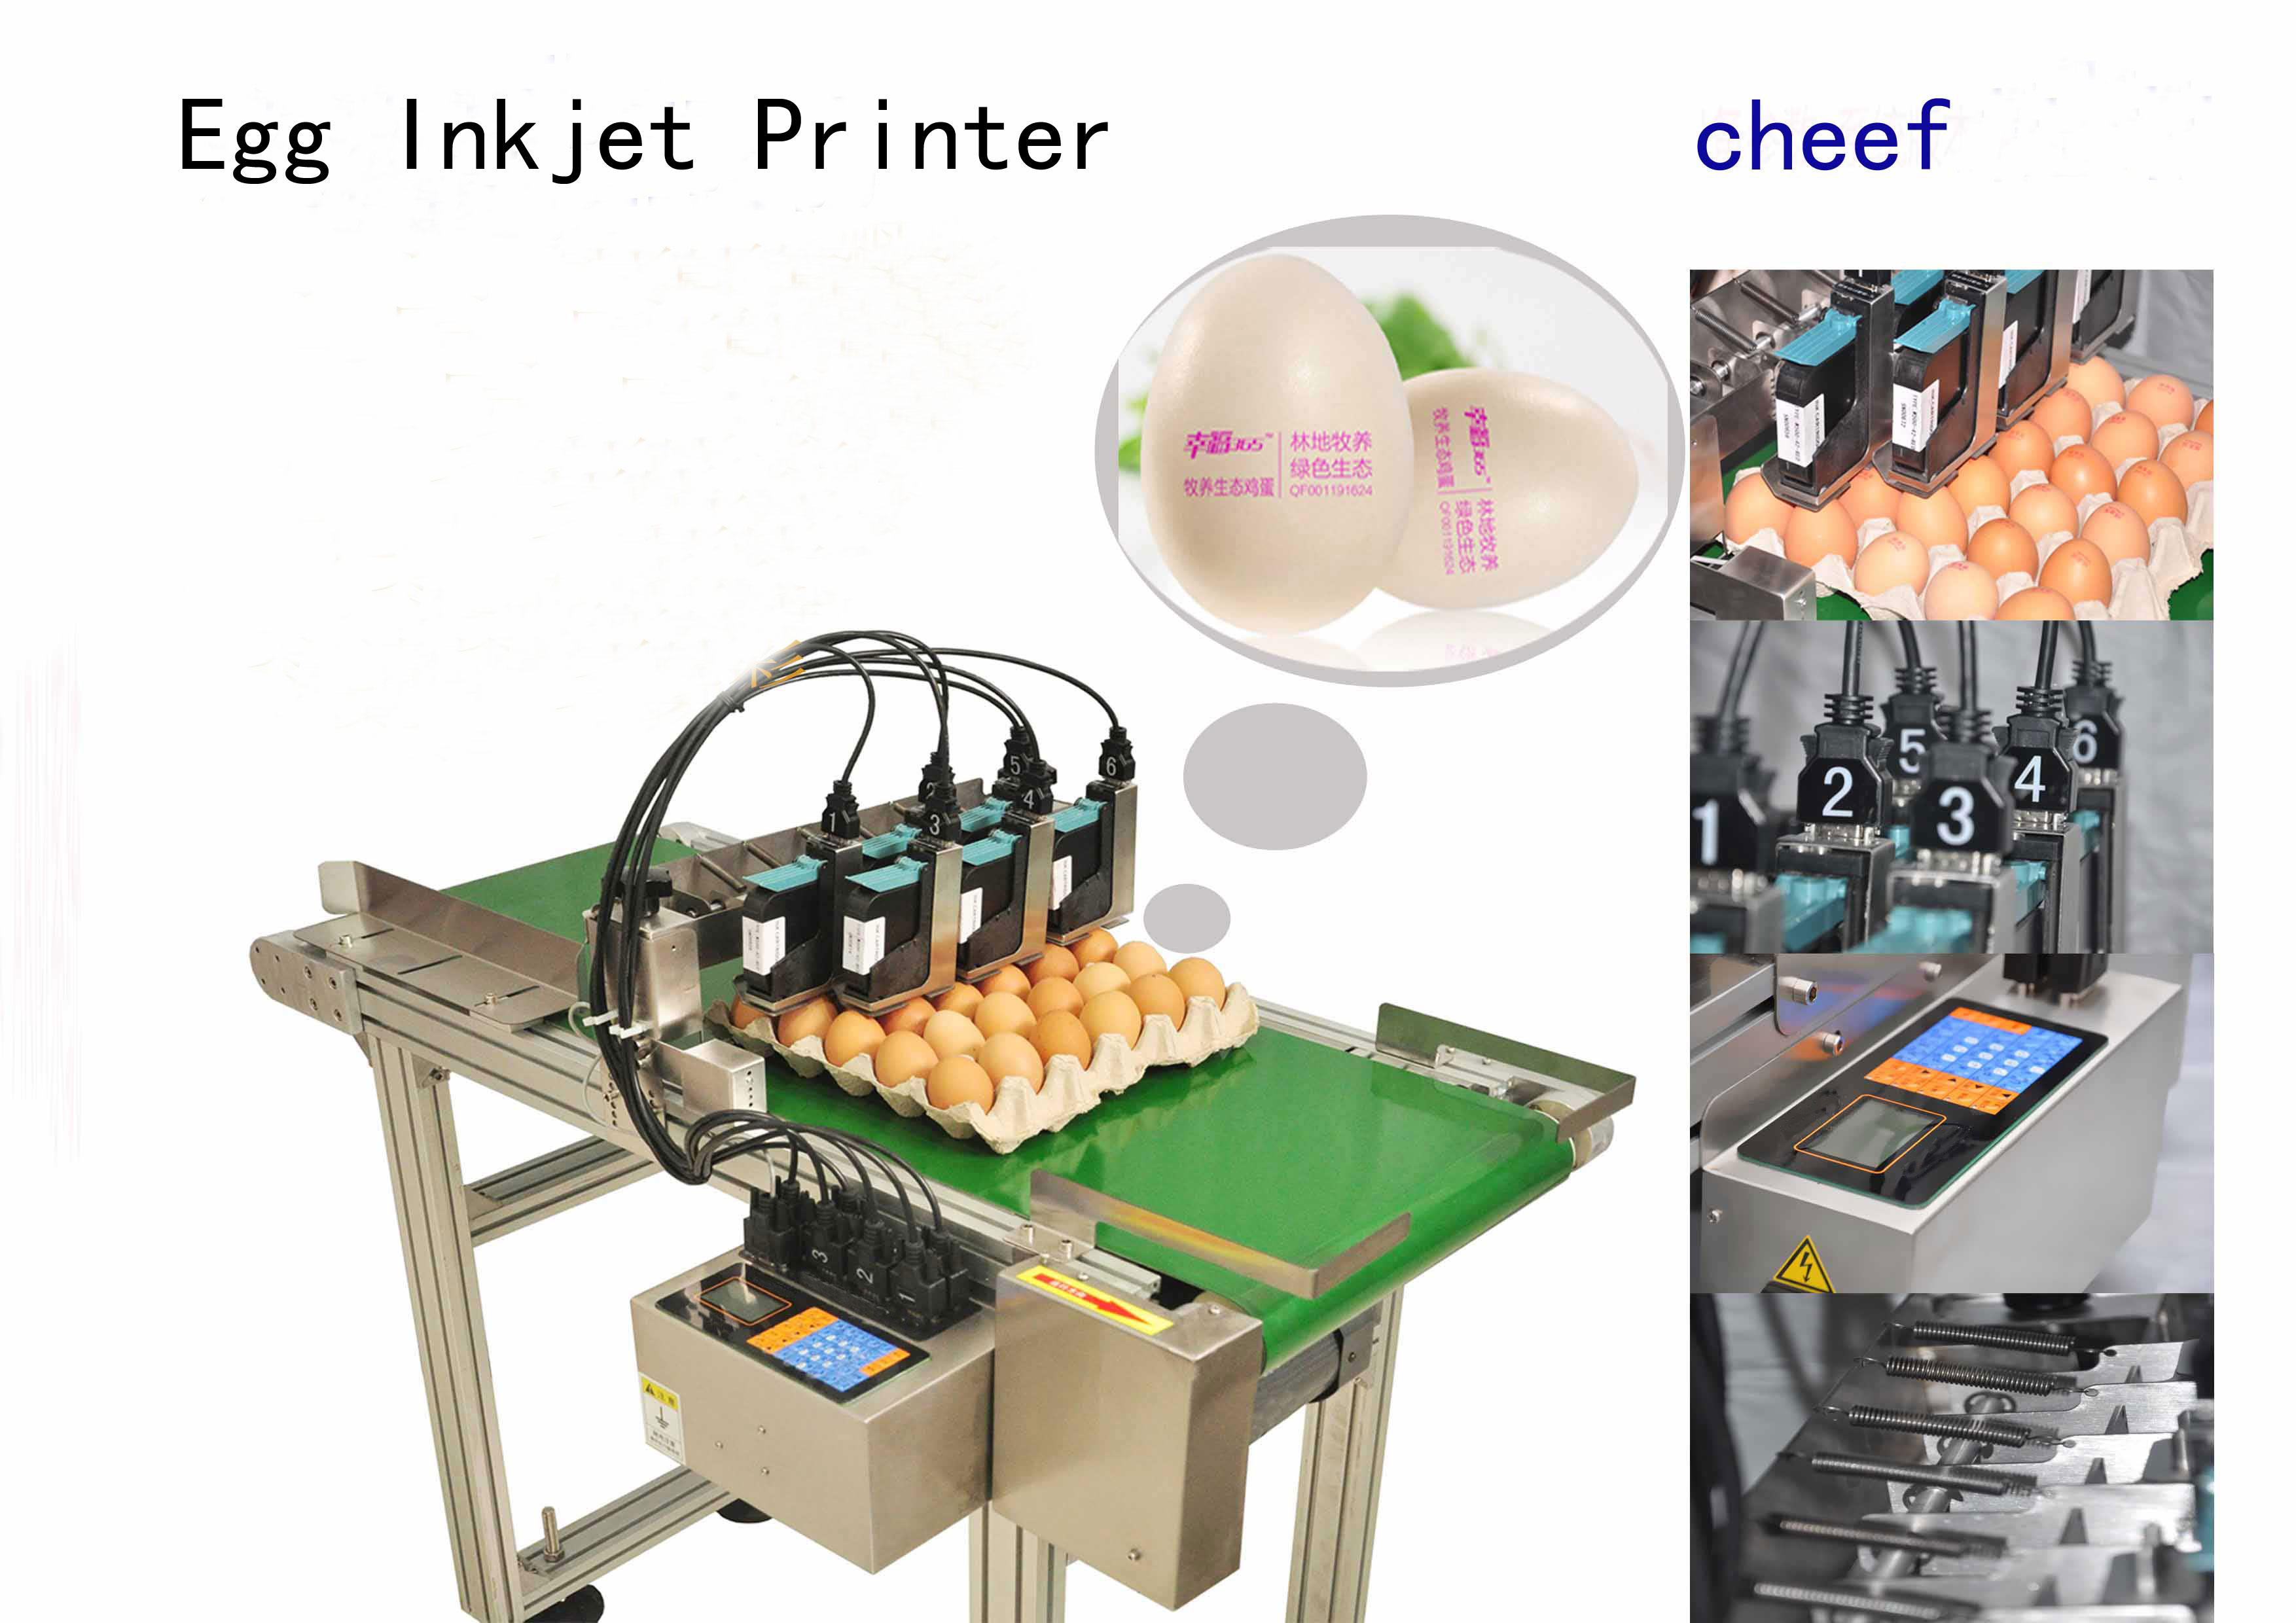 fabricante fornece impressoras jato de tinta específicas para ovos de alta eficiência com um transportador de 2 metros